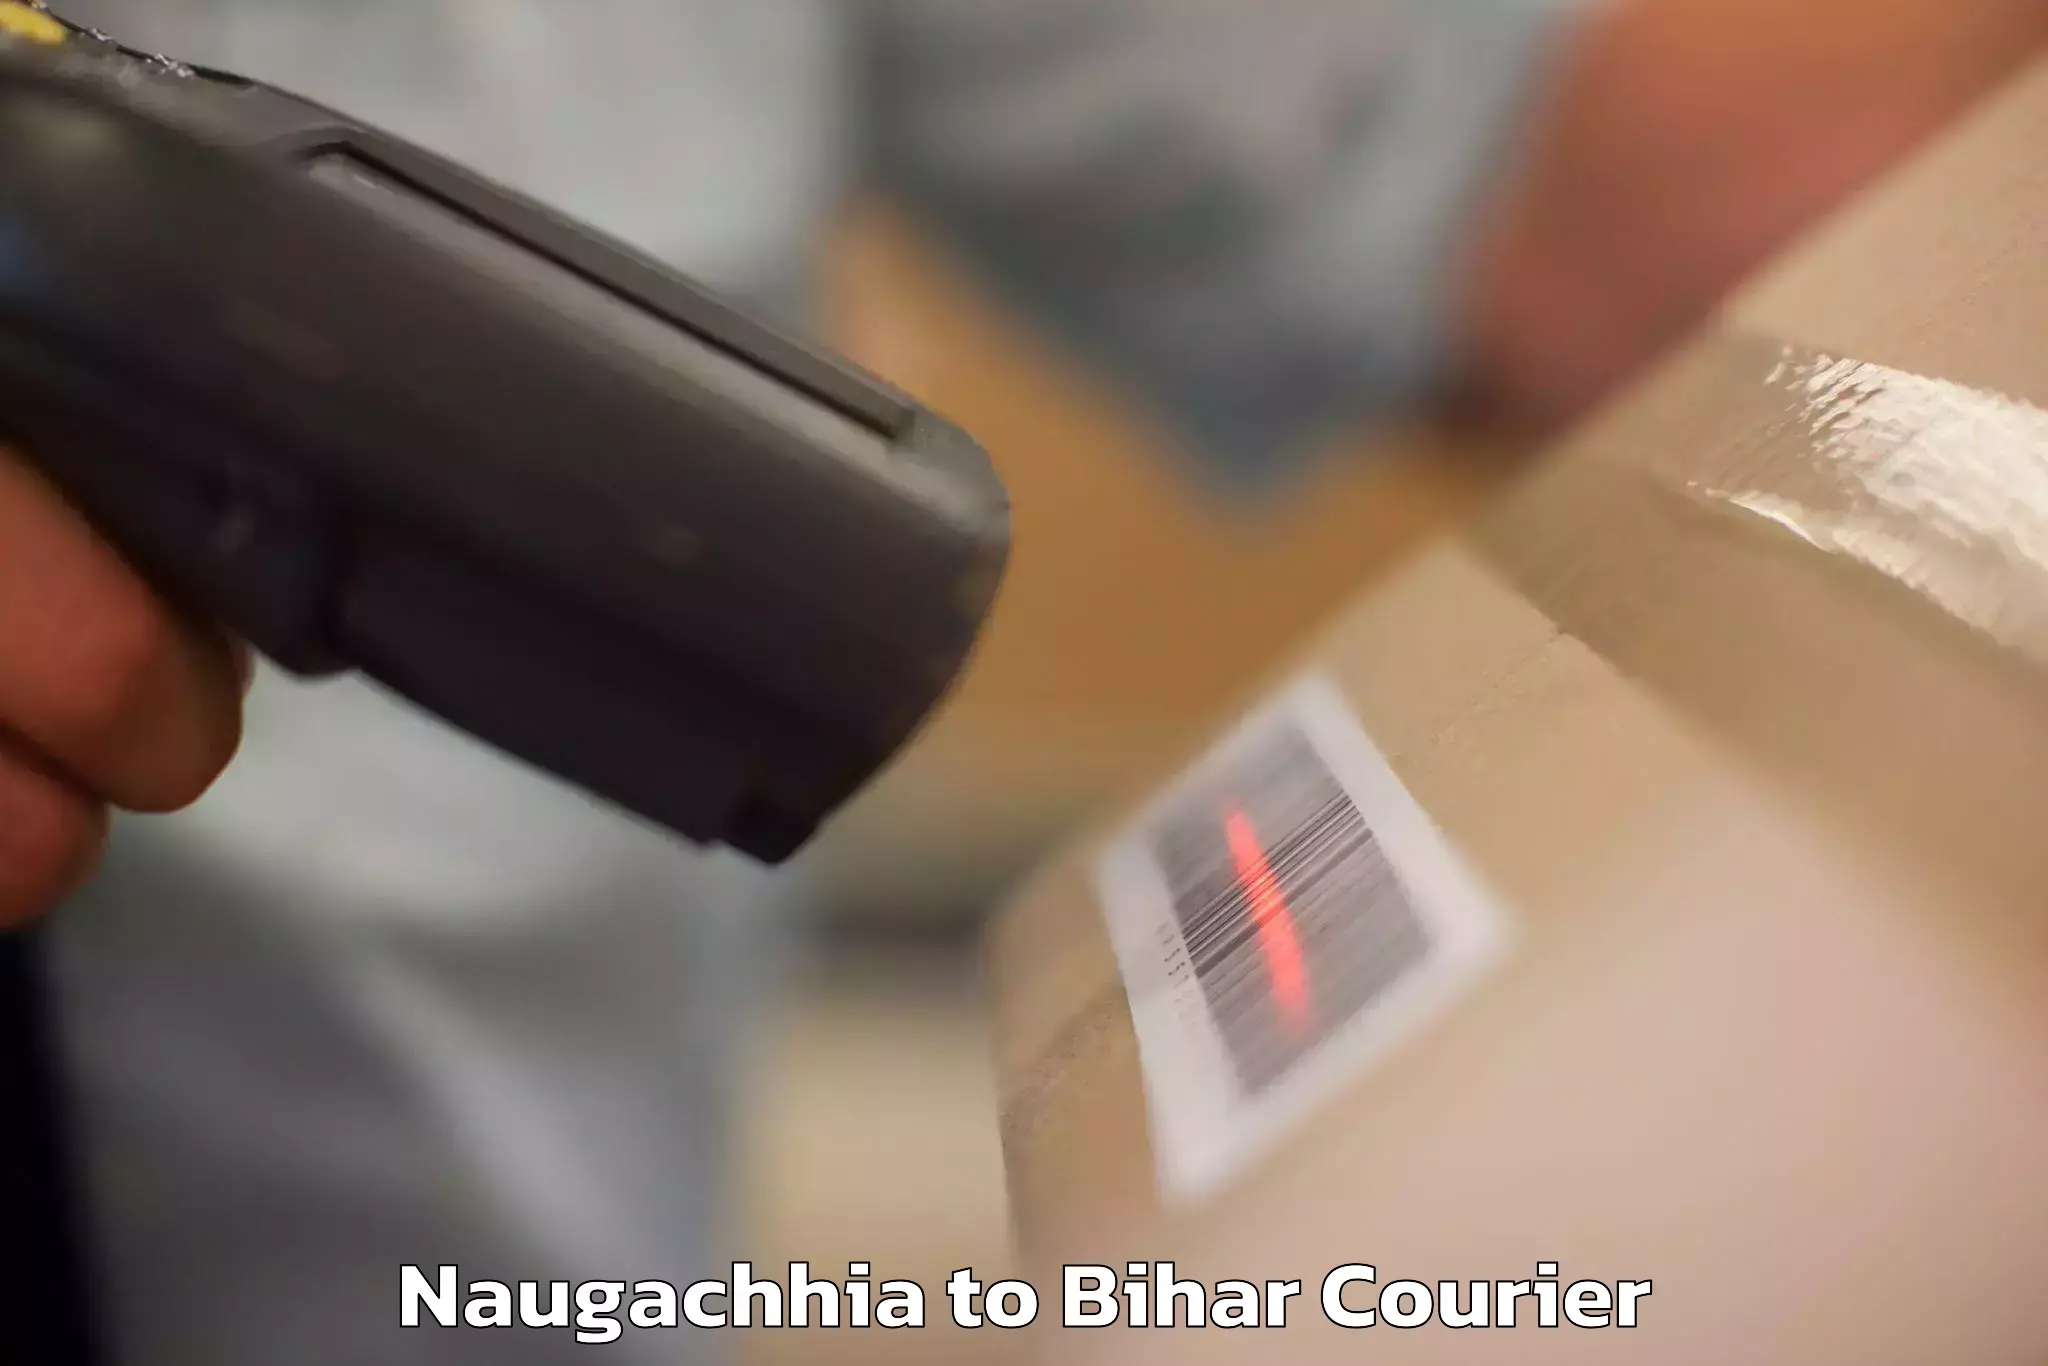 Luggage transport service Naugachhia to Buxar